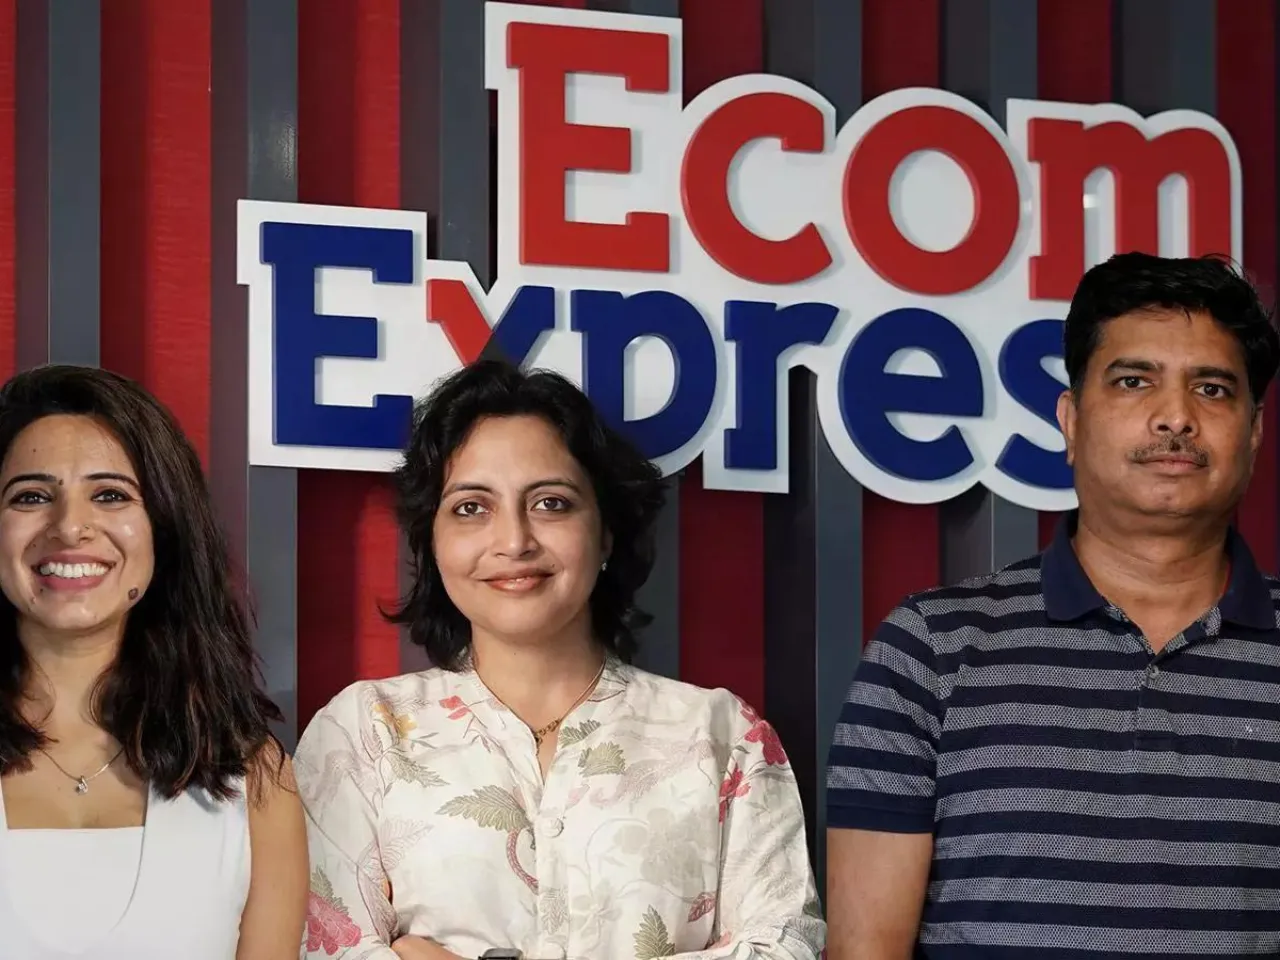 Ecom Express strengthens leadership team